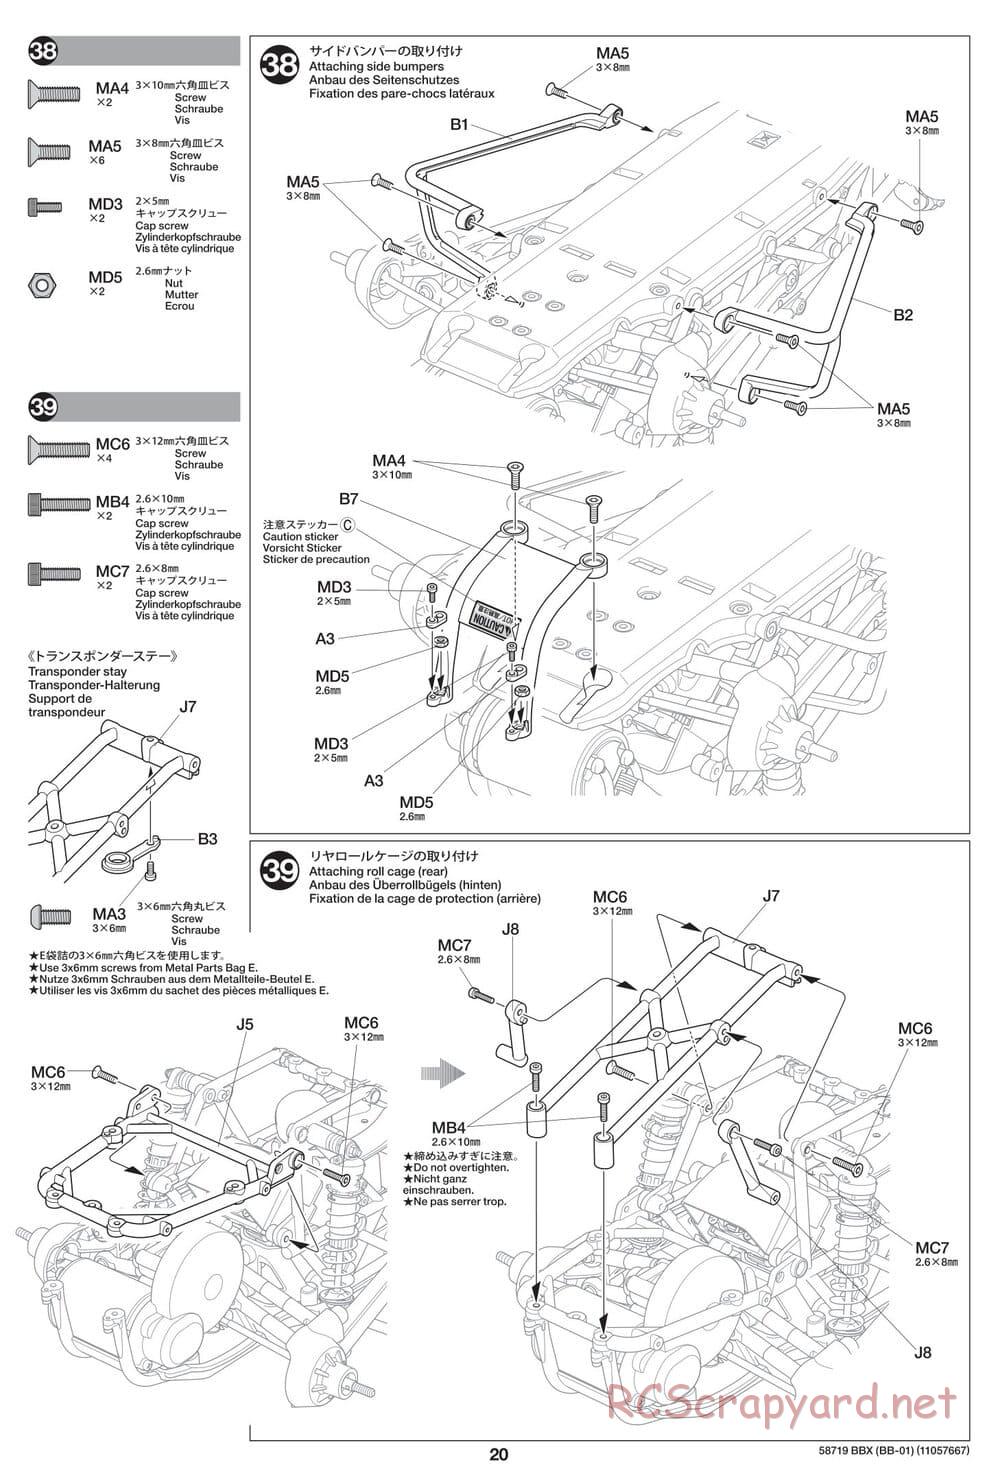 Tamiya - BBX - BB-01 Chassis - Manual - Page 20